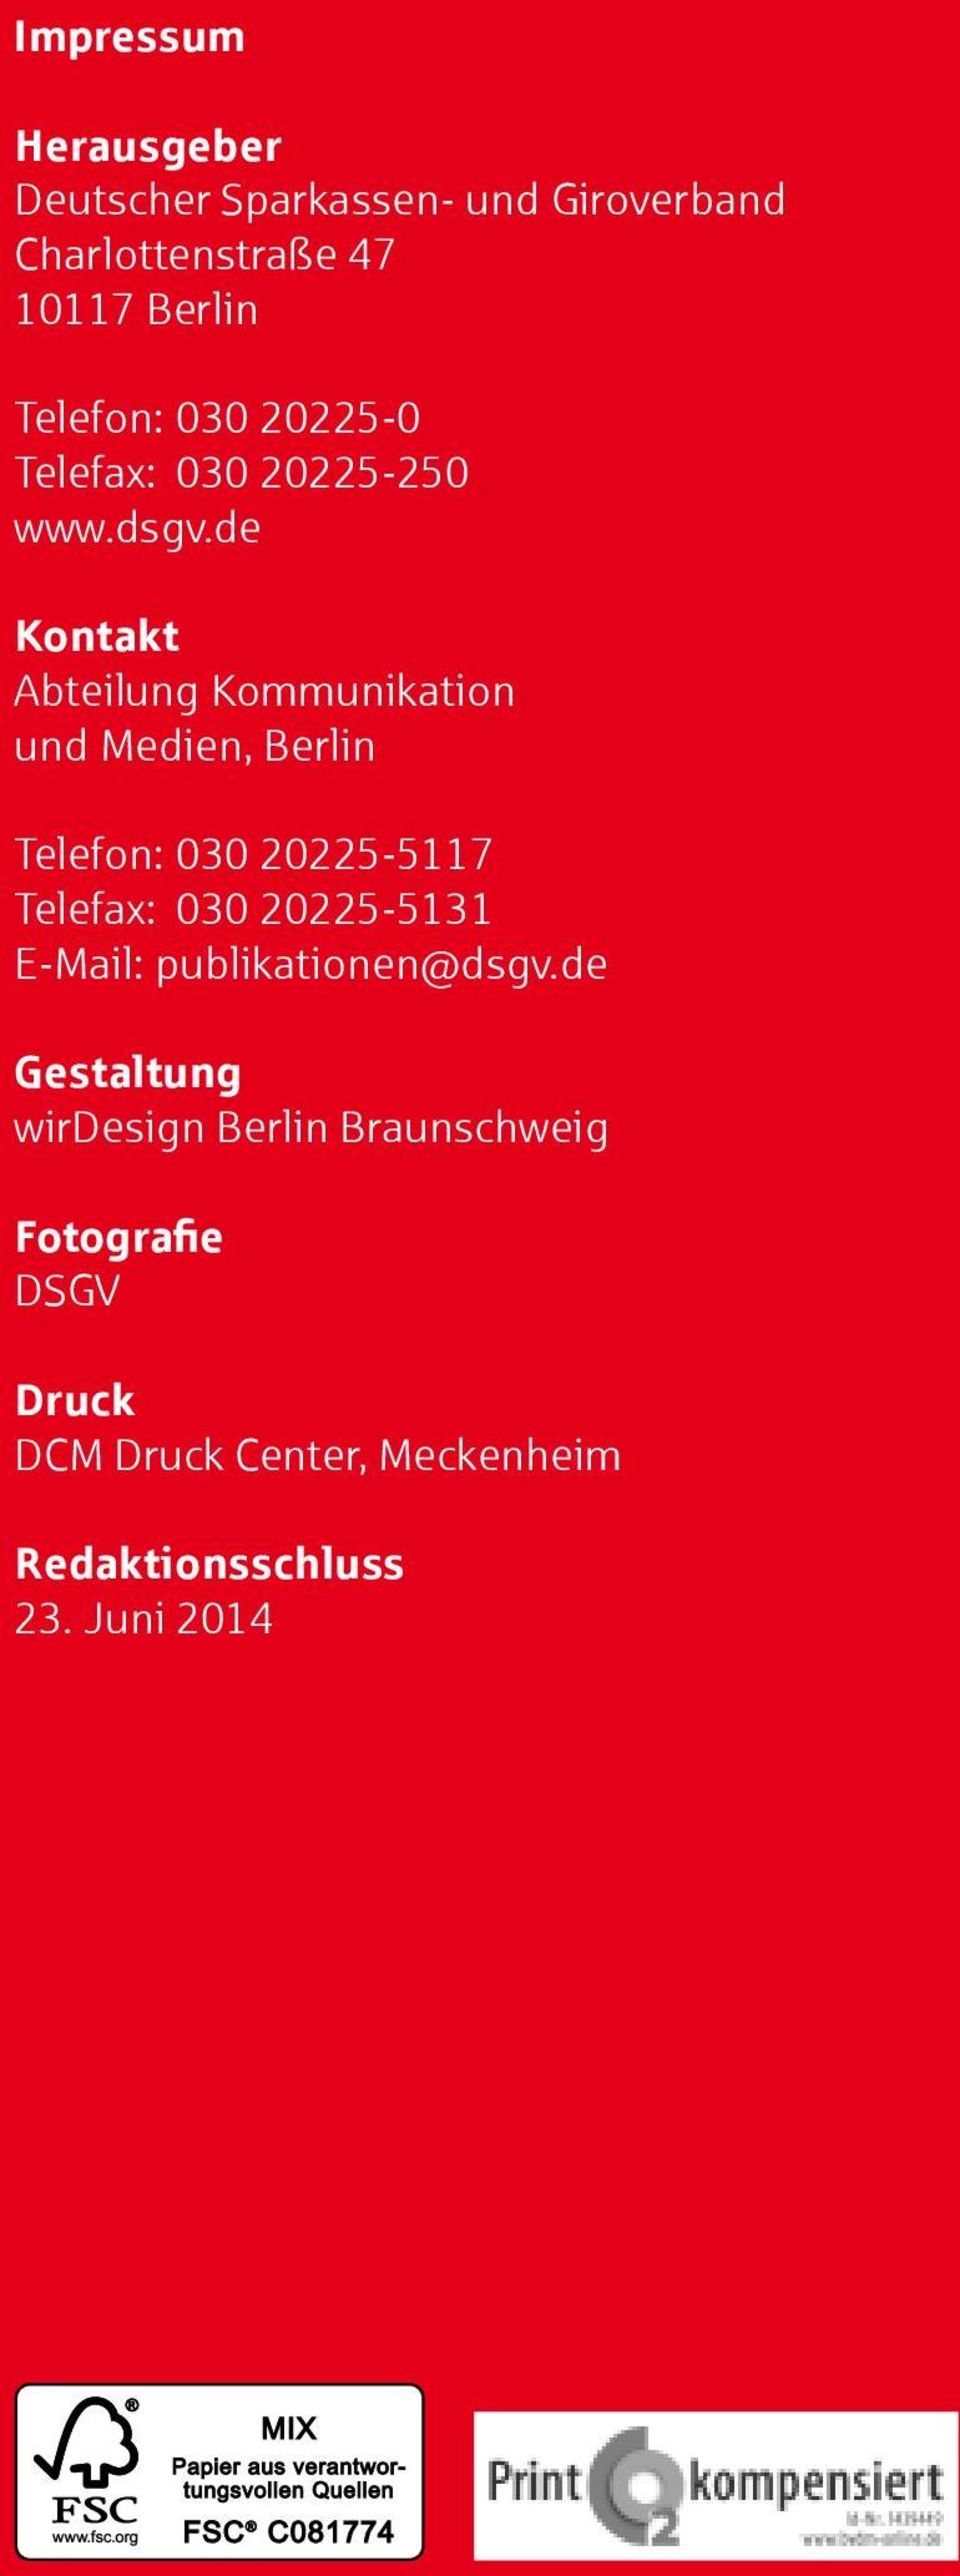 de Kontakt Abteilung Kommunikation und Medien, Berlin Telefon: 030 20225-5117 Telefax: 030